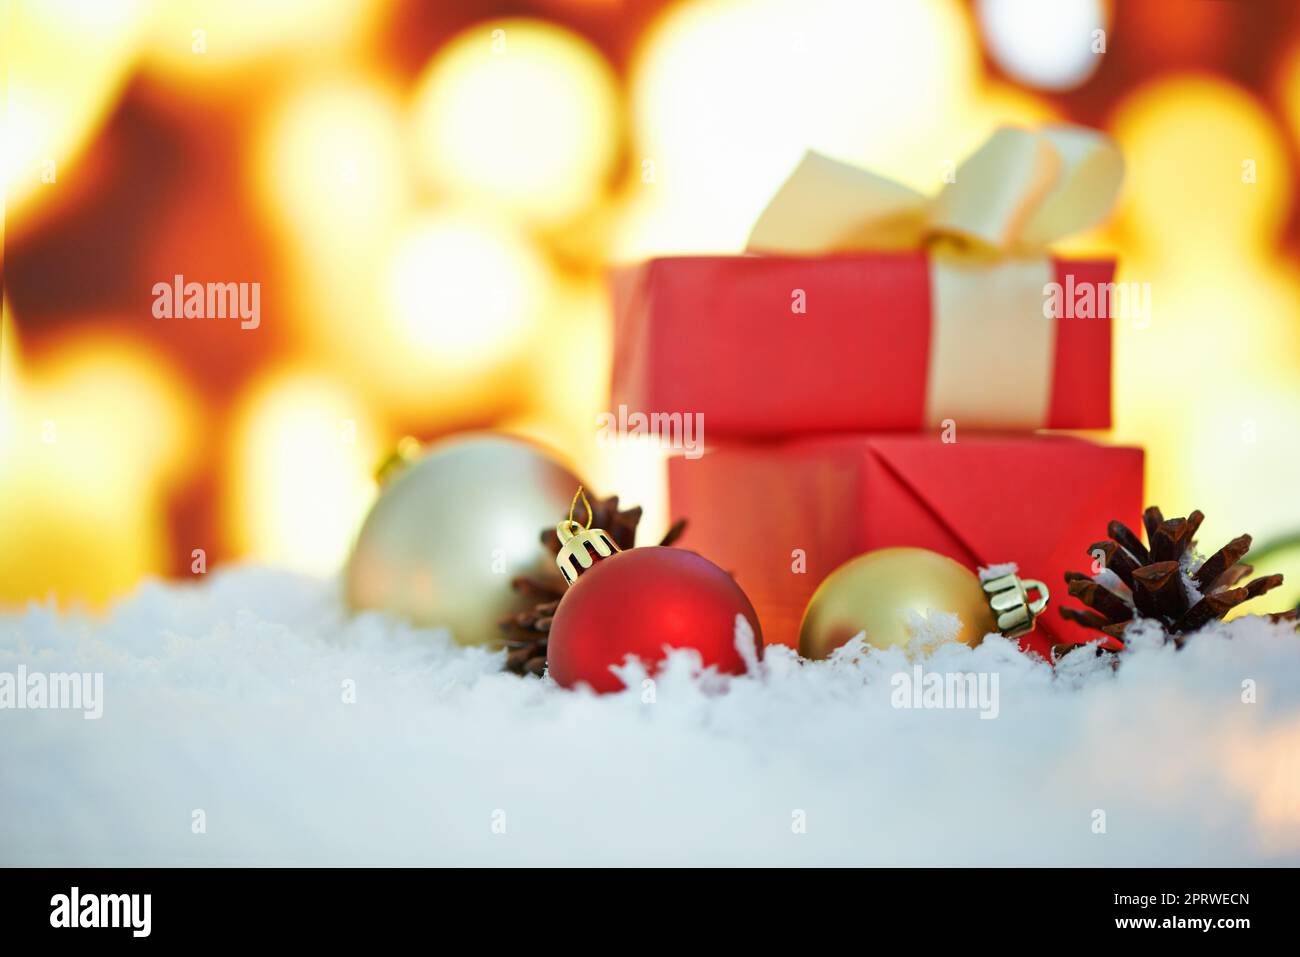 È qui che avviene la magia. Una disposizione delle decorazioni di Natale contro uno sfondo di luci. Foto Stock